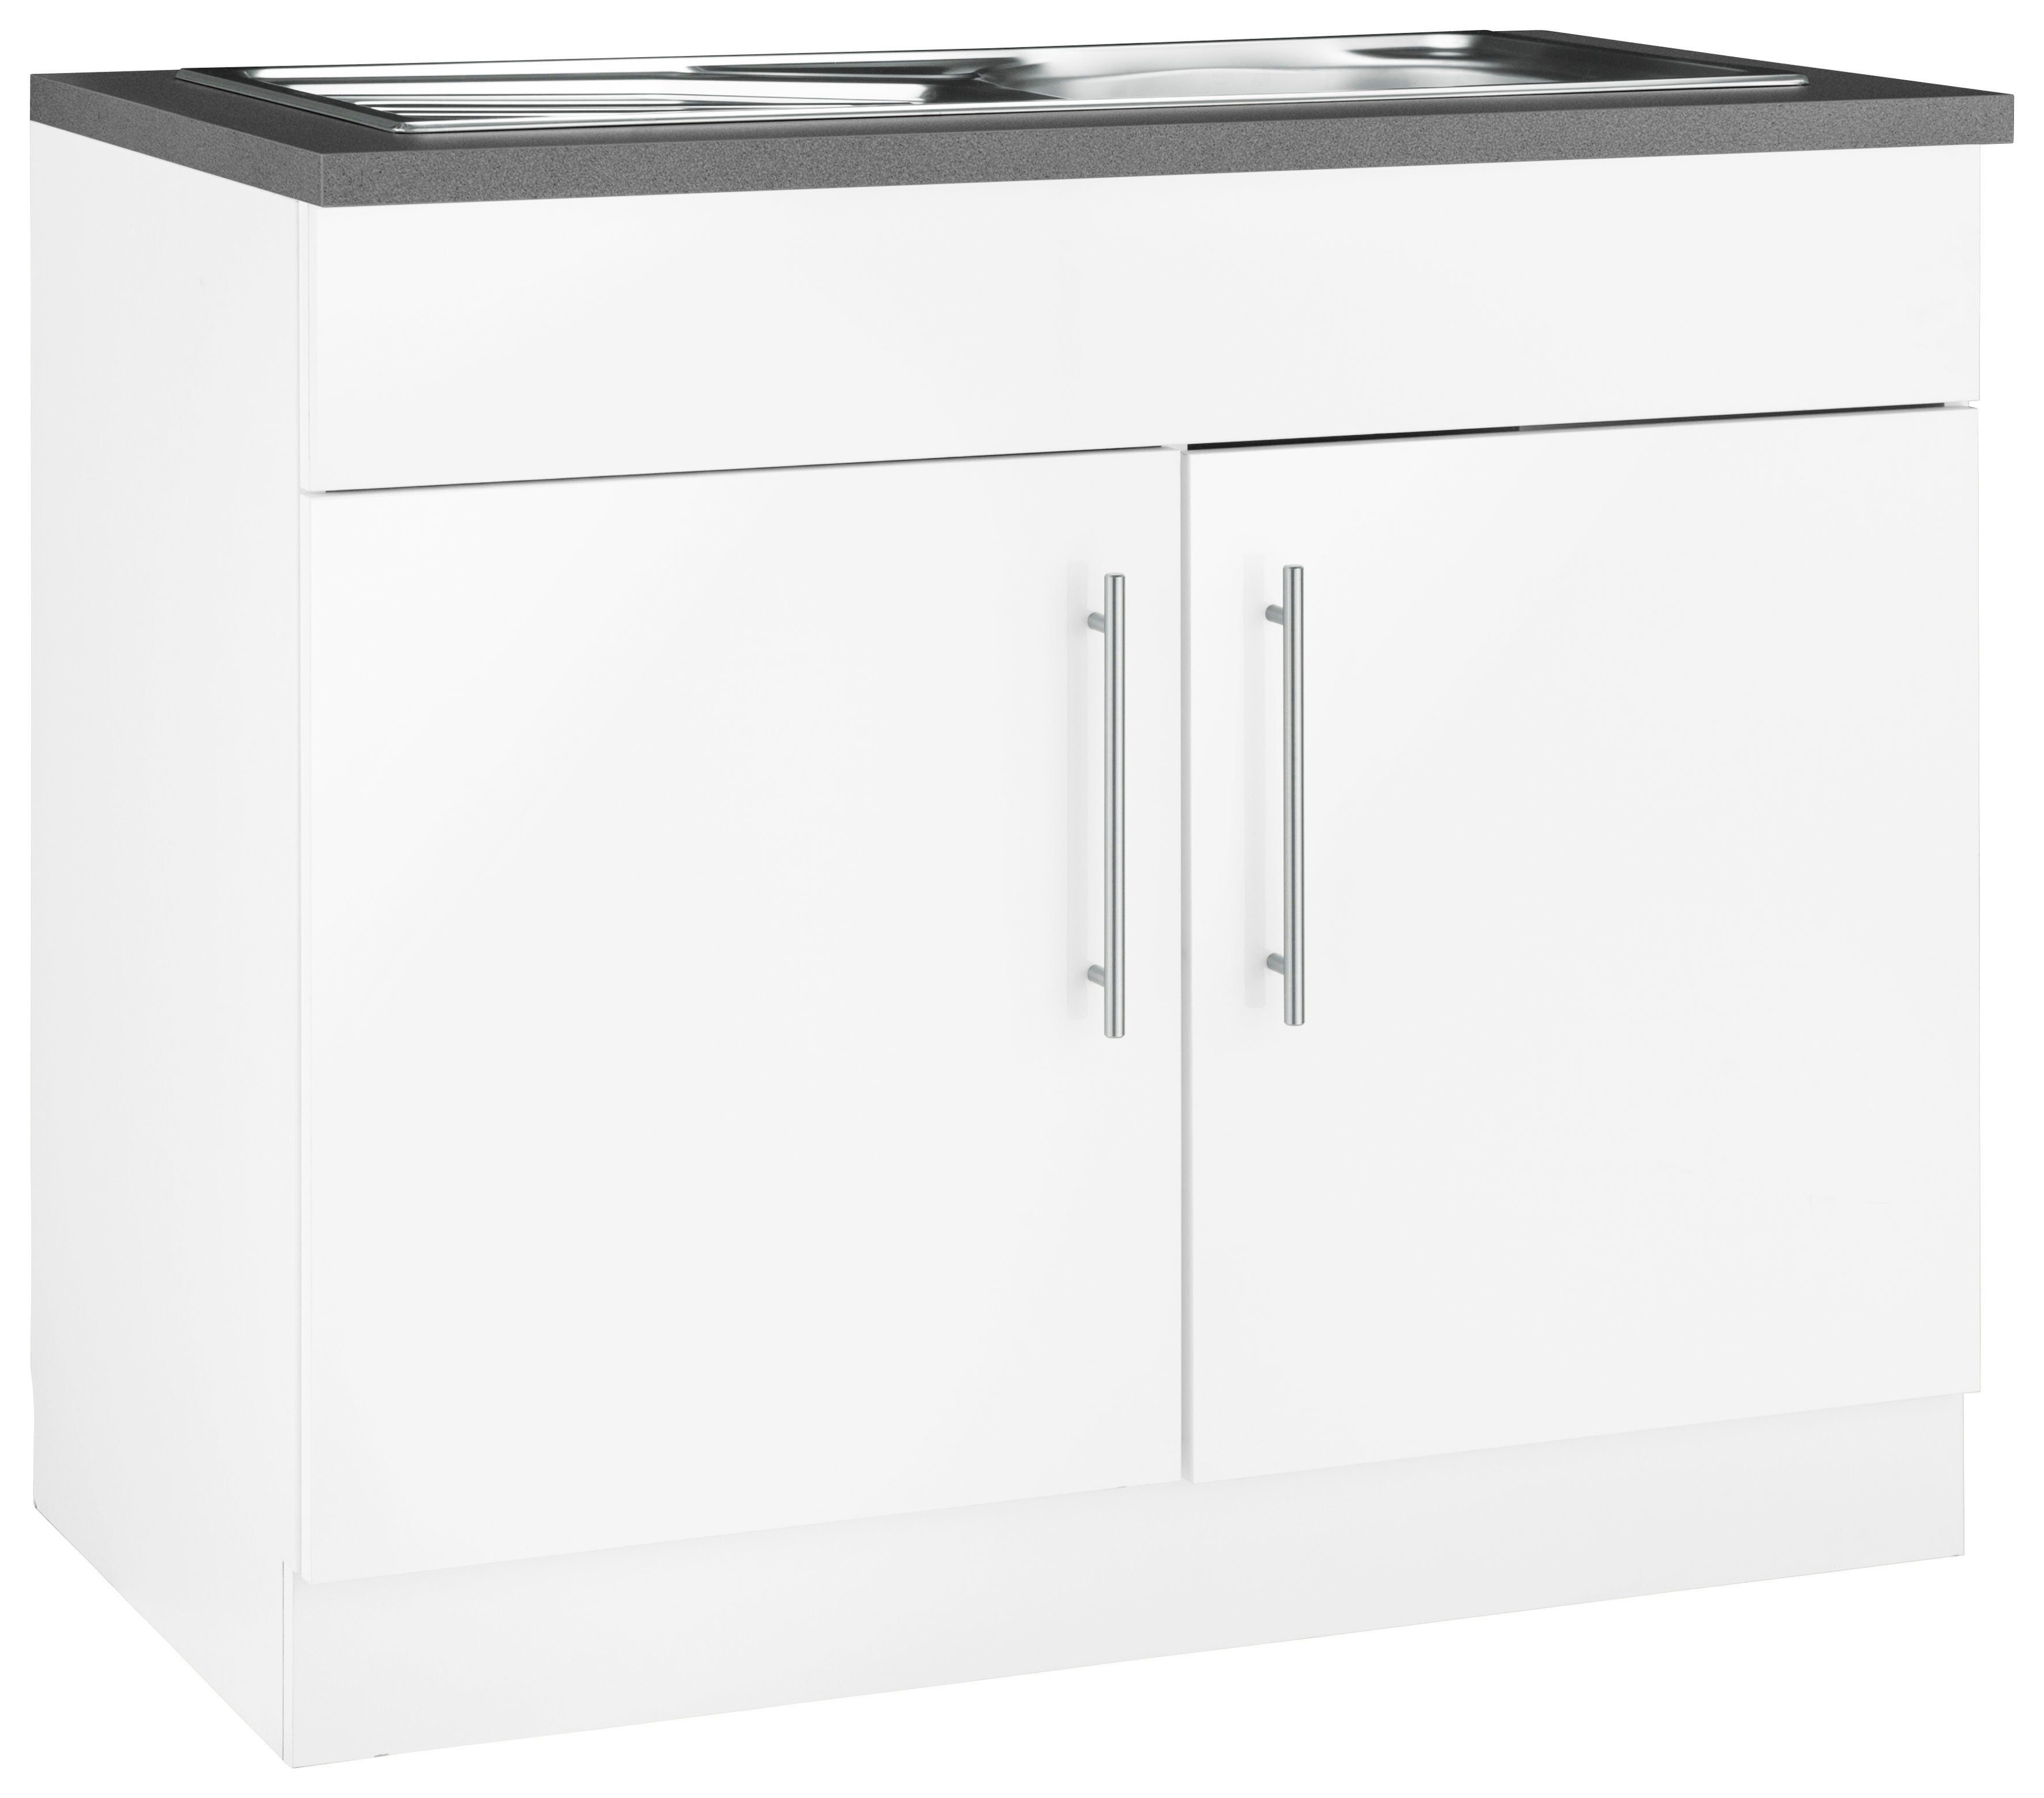 Korpus: Weiß | Spülenschrank Küchen Cali cm Front: Weiß Granit wiho Glanz, breit Arbeitsplatte: Weiß, Grau 100